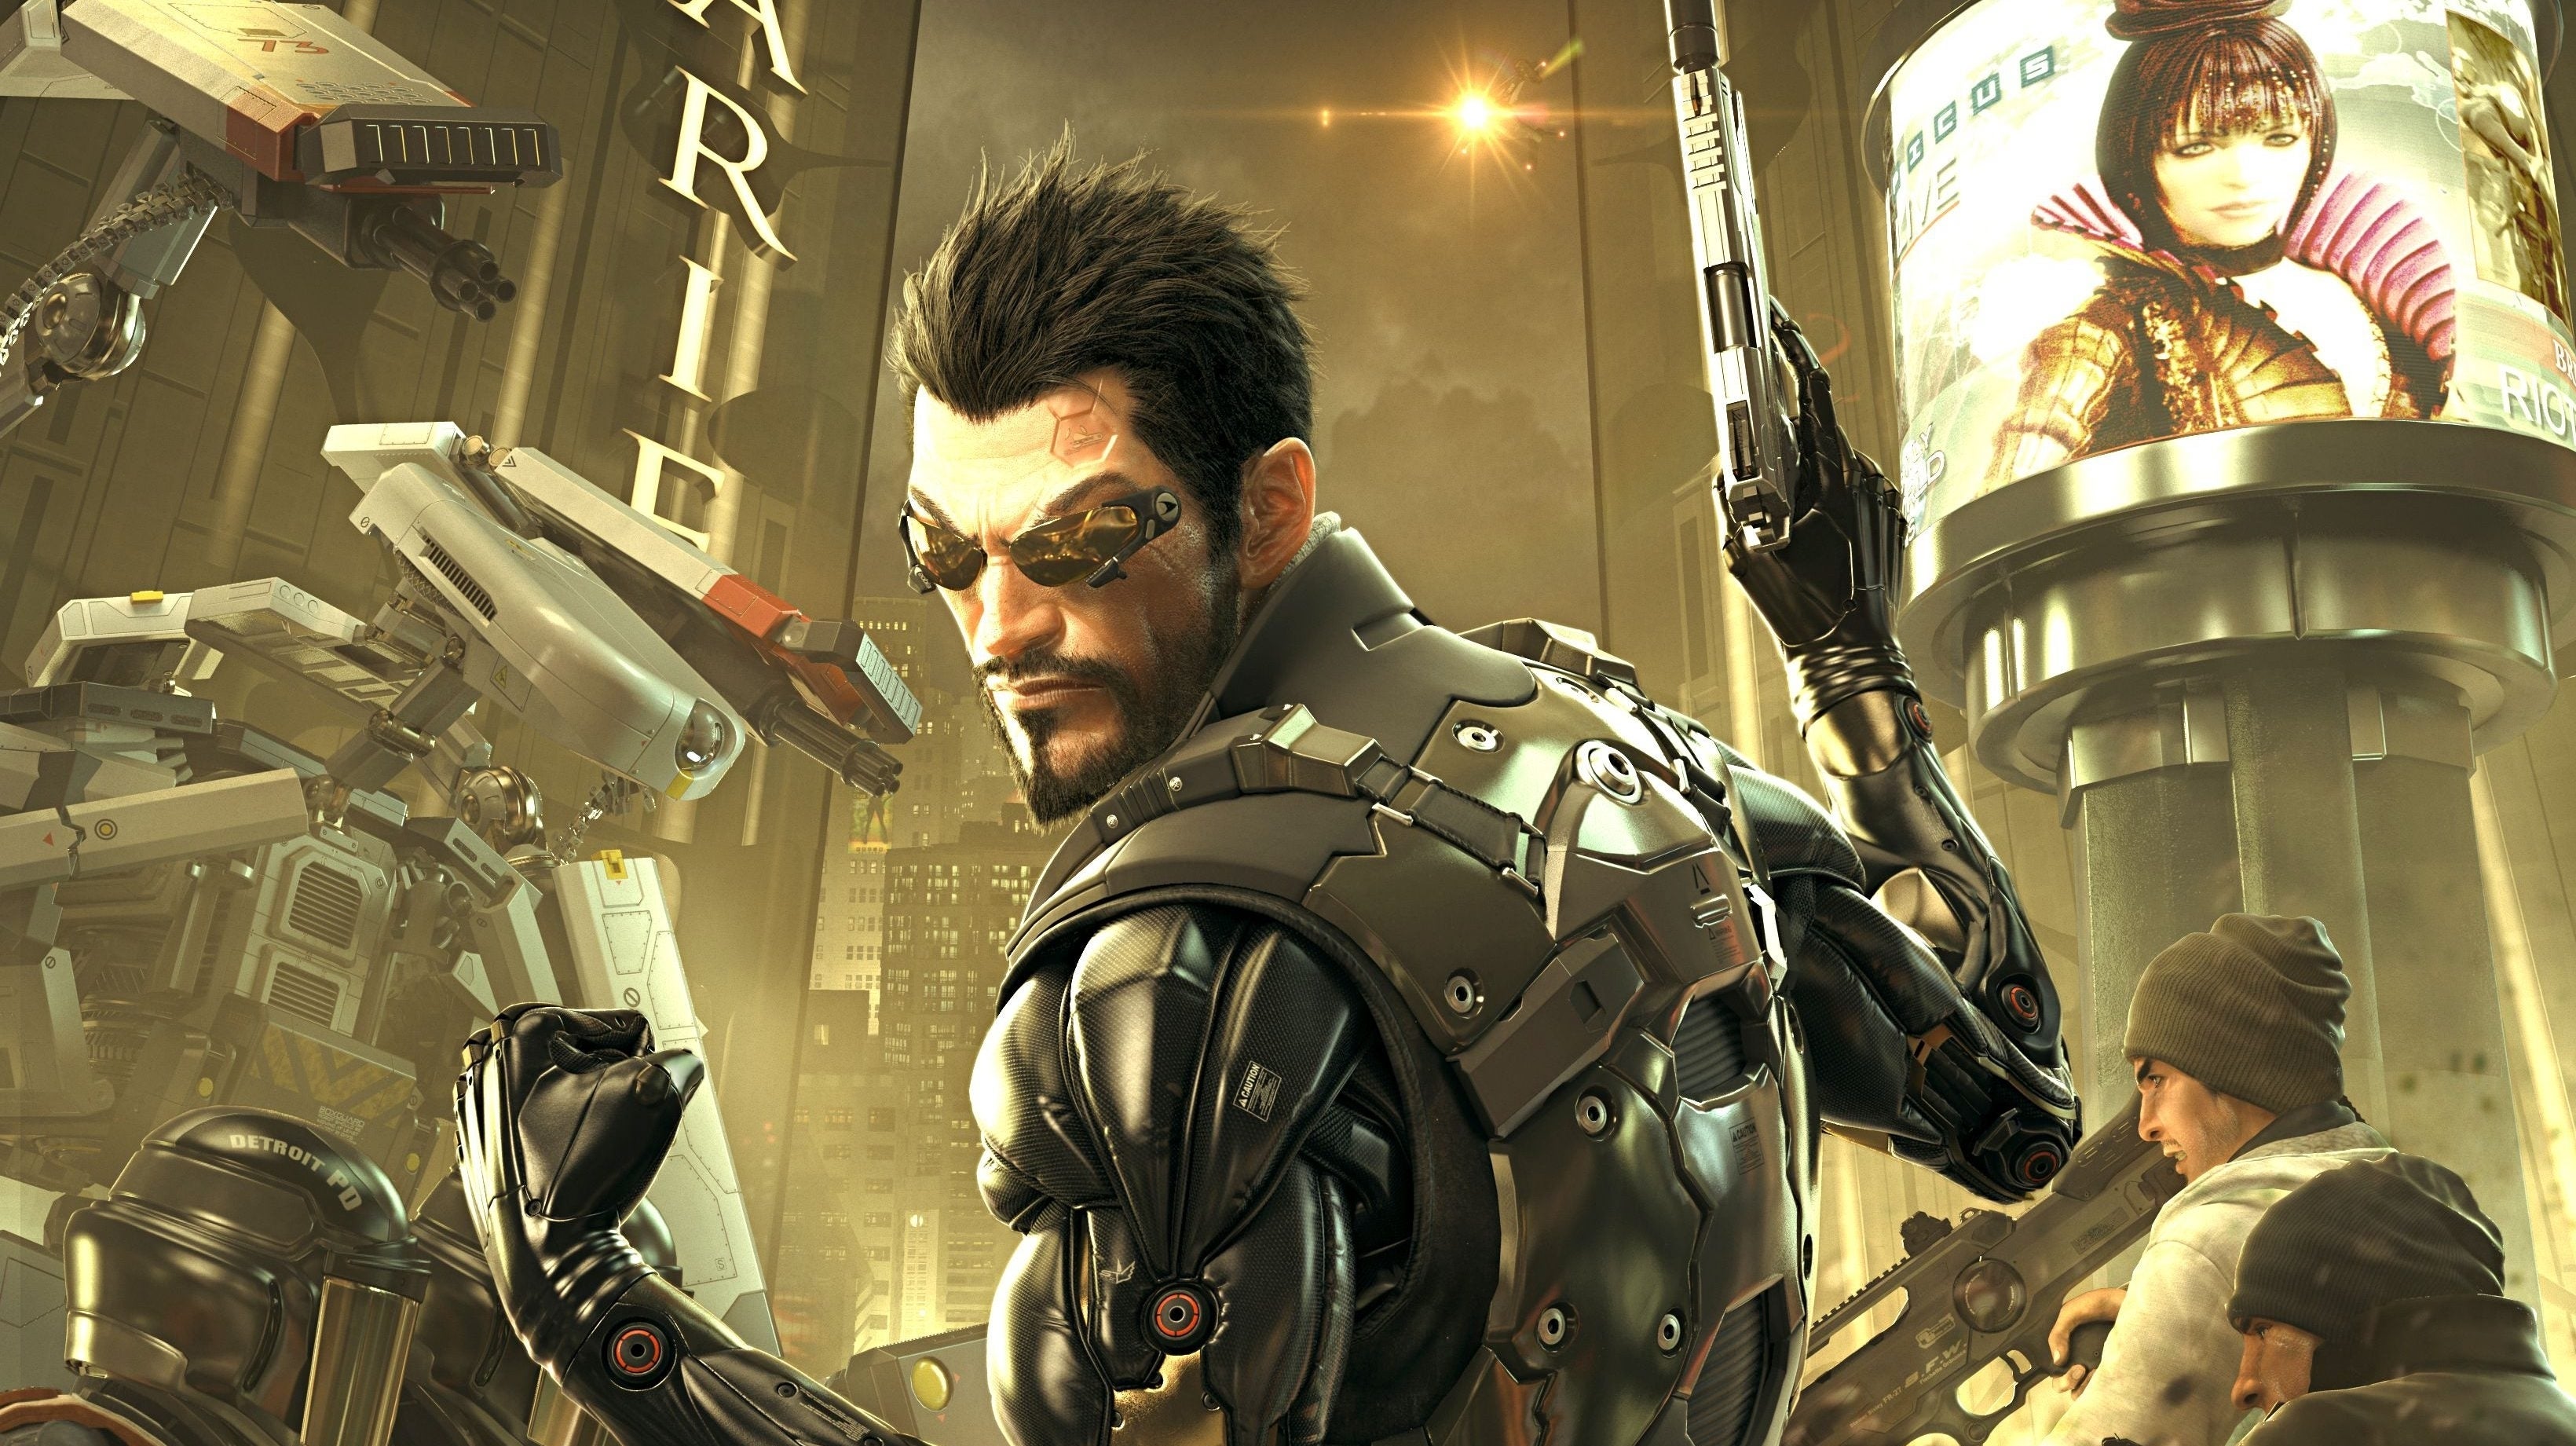 Immagine di Deus Ex accoglie Cyberpunk 2077 in una stupenda illustrazione: 'congratulazioni a CD Projekt RED!'